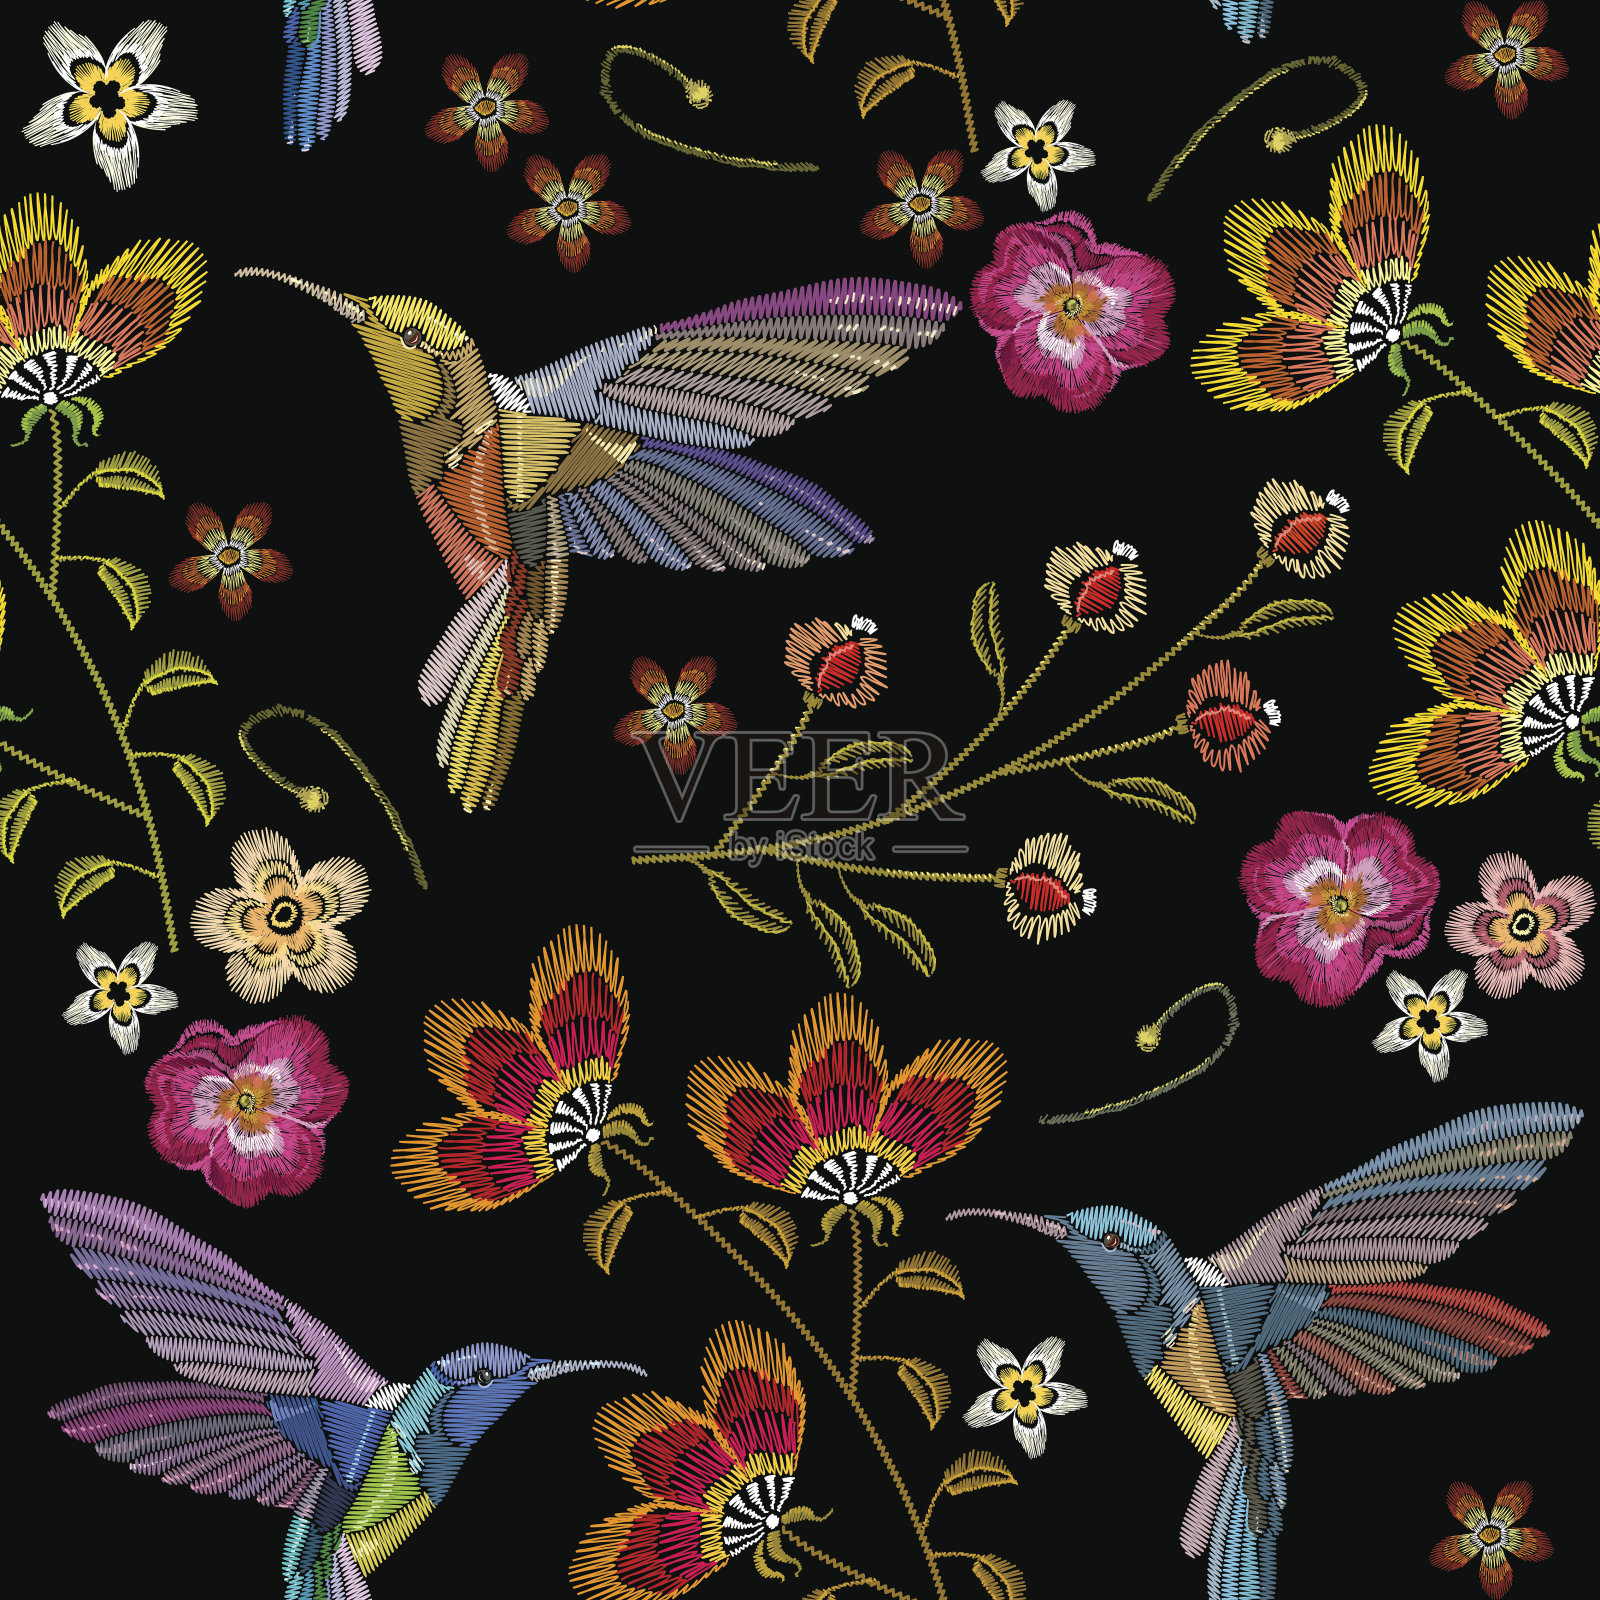 蜂鸟和热带花卉刺绣无缝图案。美丽的蜂鸟和奇异的花朵刺绣在黑色的背景。服装，纺织品，t恤设计的模板插画图片素材